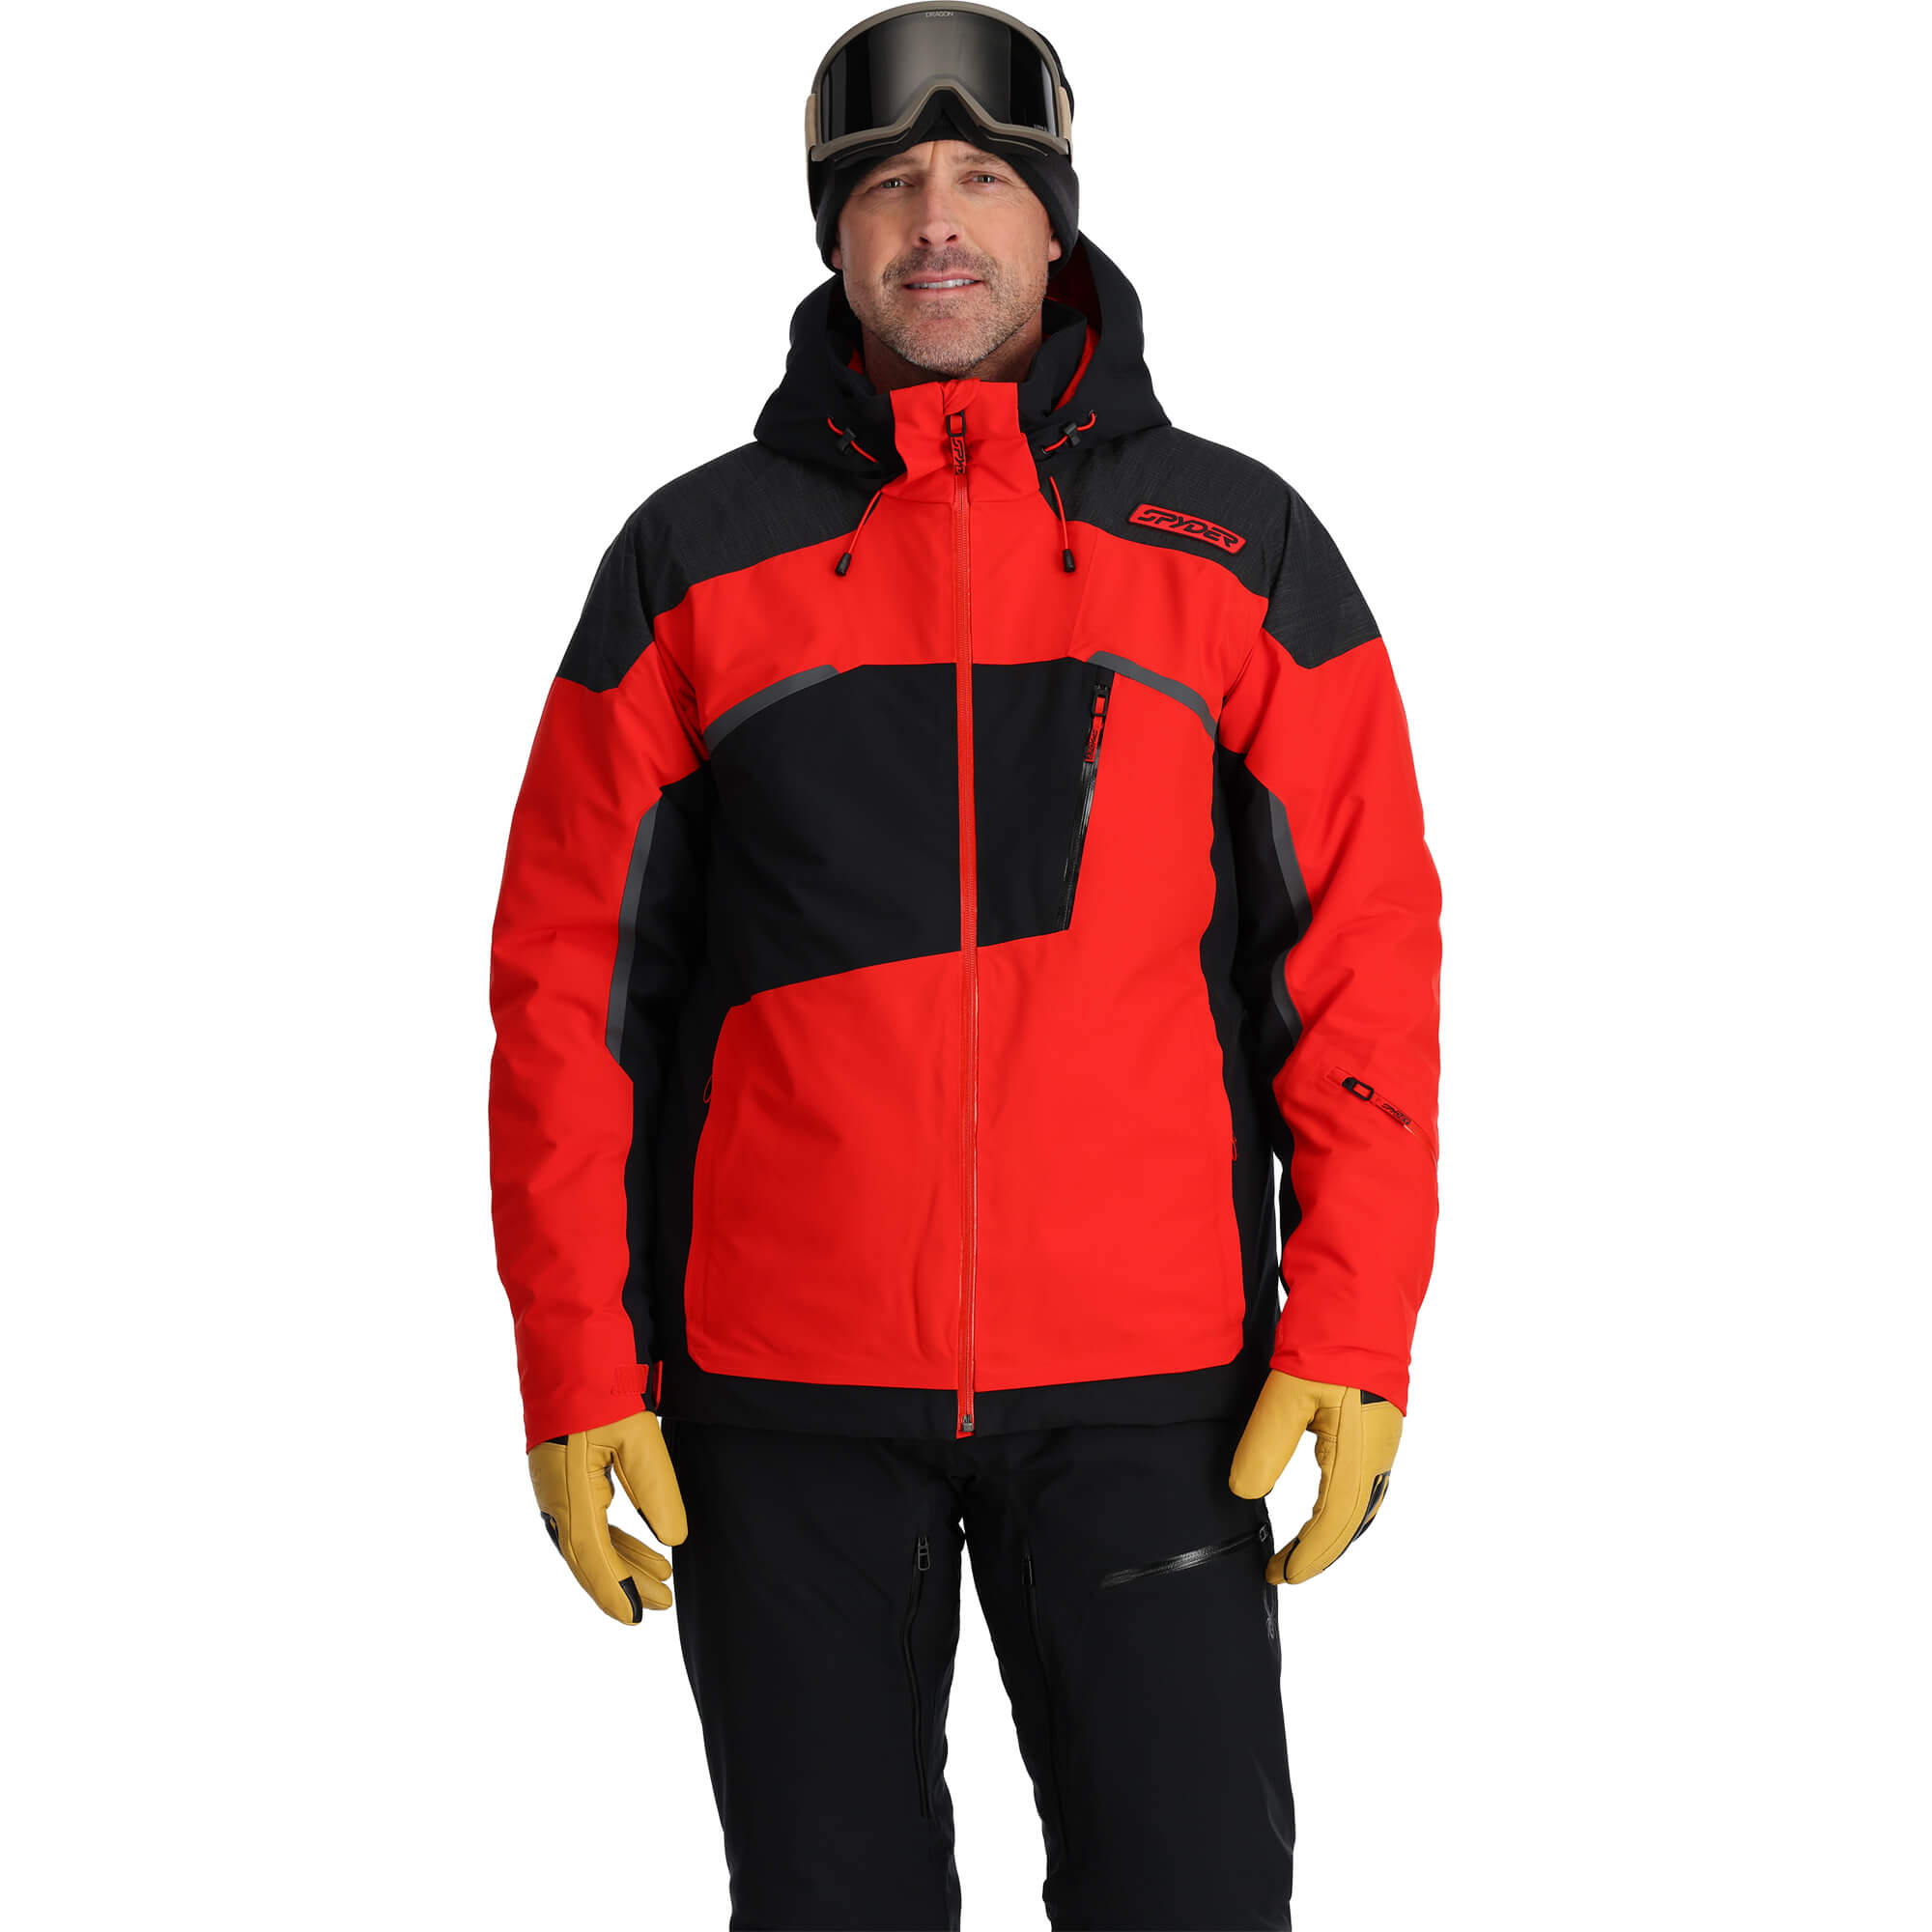 Spyder Leader Men's Ski/Snowboard Jacket